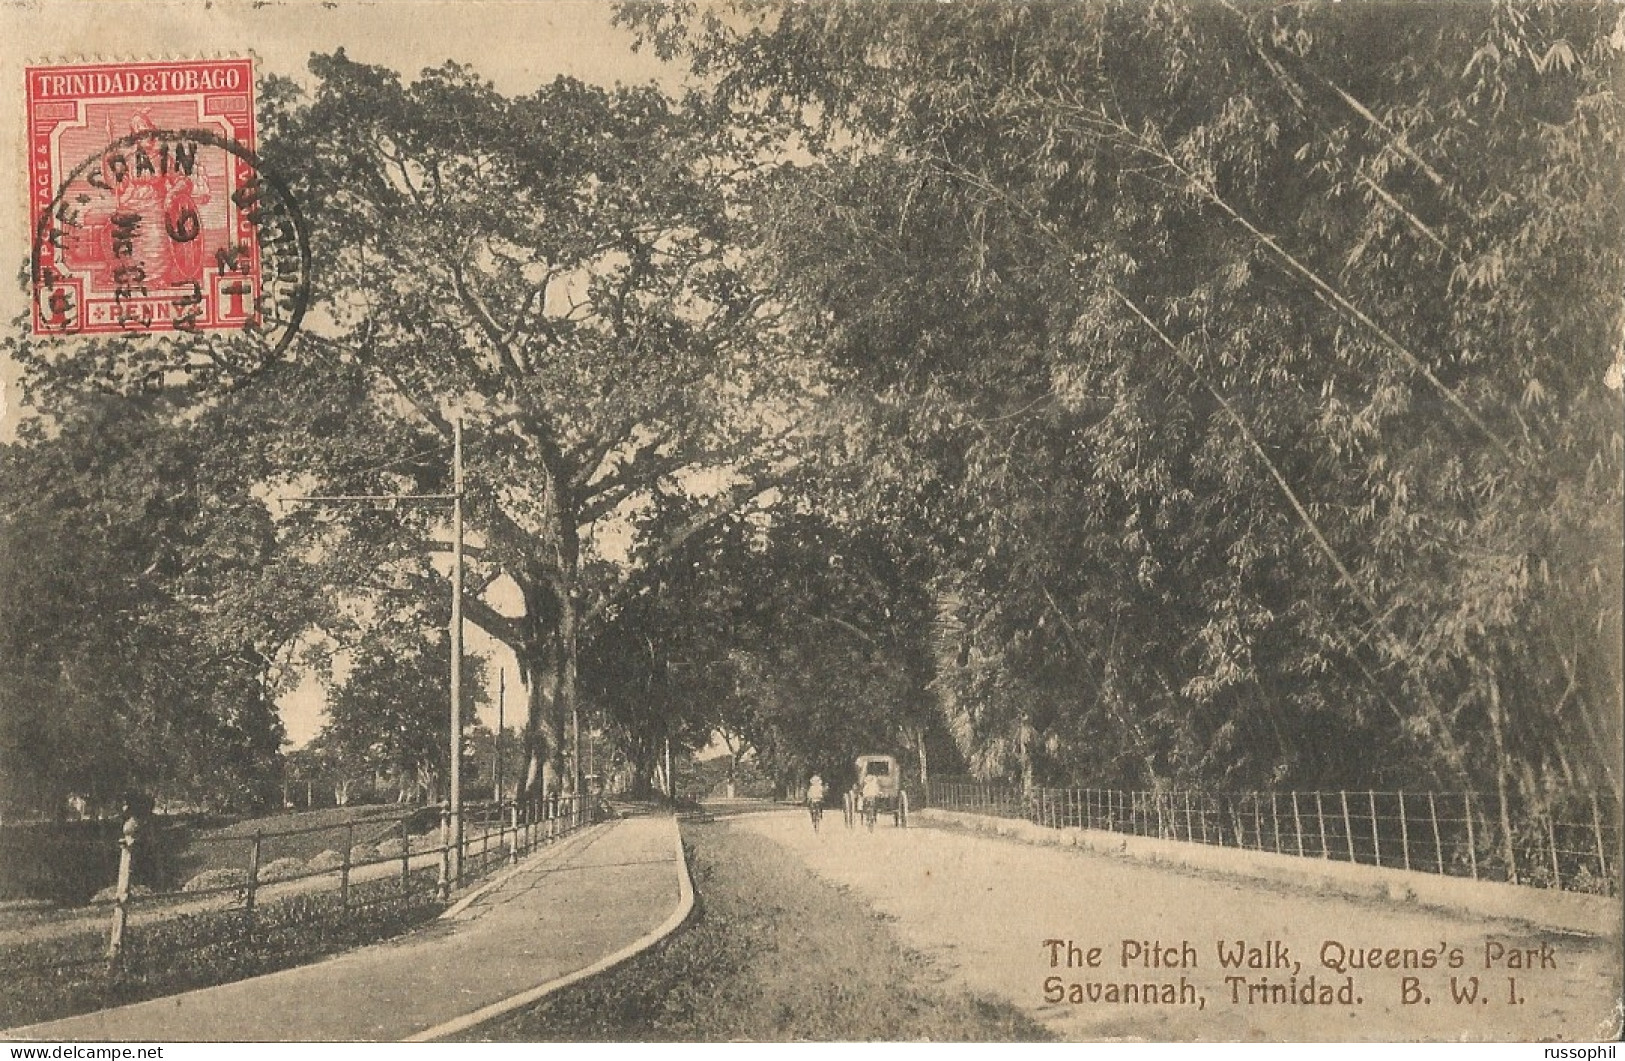 TRINIDAD - THE PITCH WALK, QUEEN'S PARK - SAVANNAH. B.W.I. - PUB. BY MUIR - 1913 - Trinidad